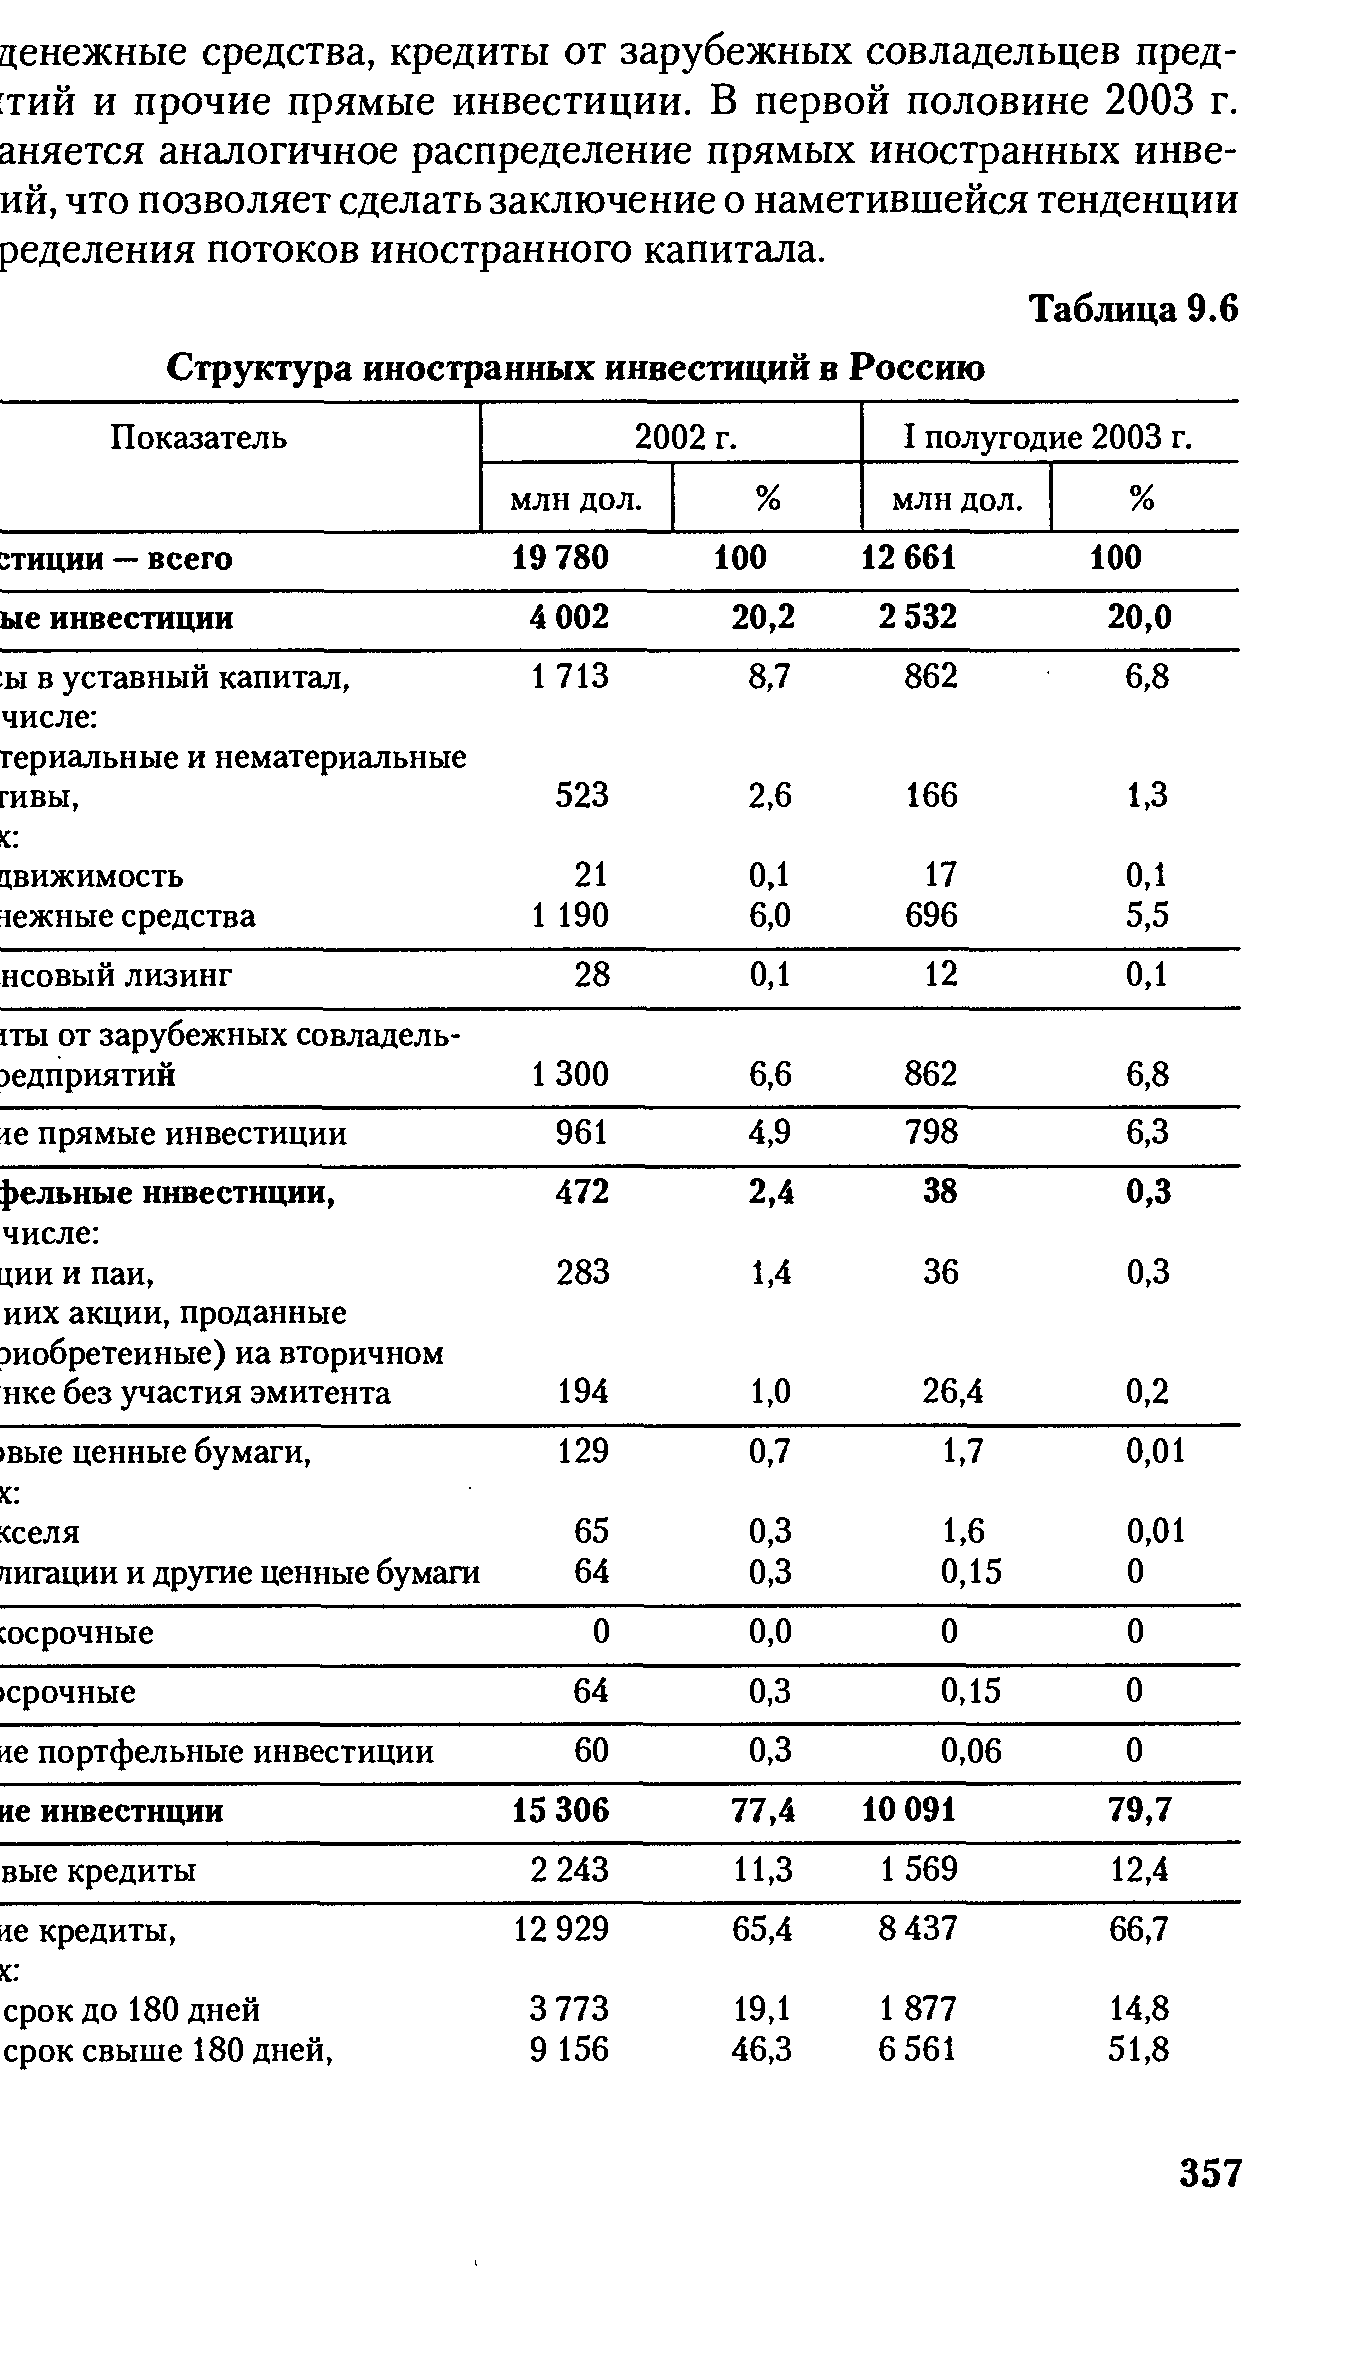 Таблица 9.6 Структура иностранных инвестиций в Россию
